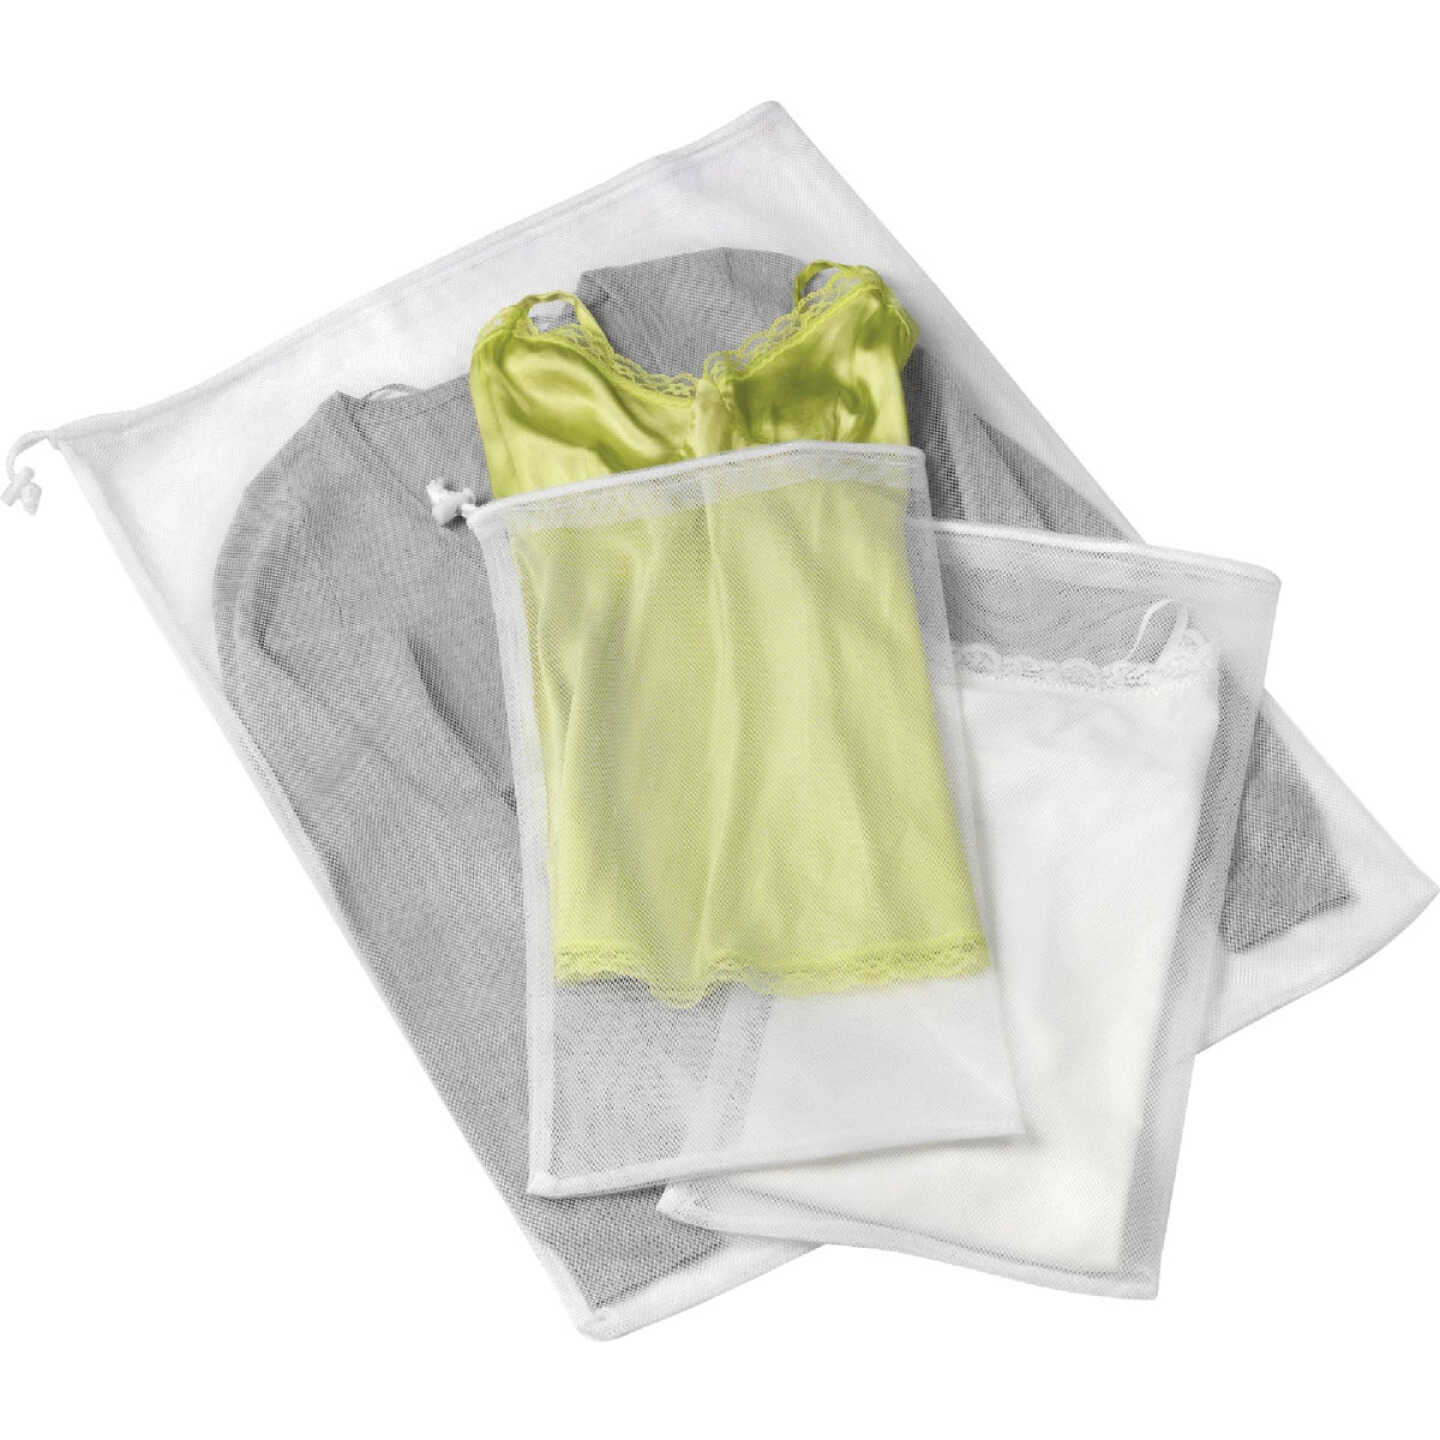 Whitmor Mesh Laundry Bag White, Household